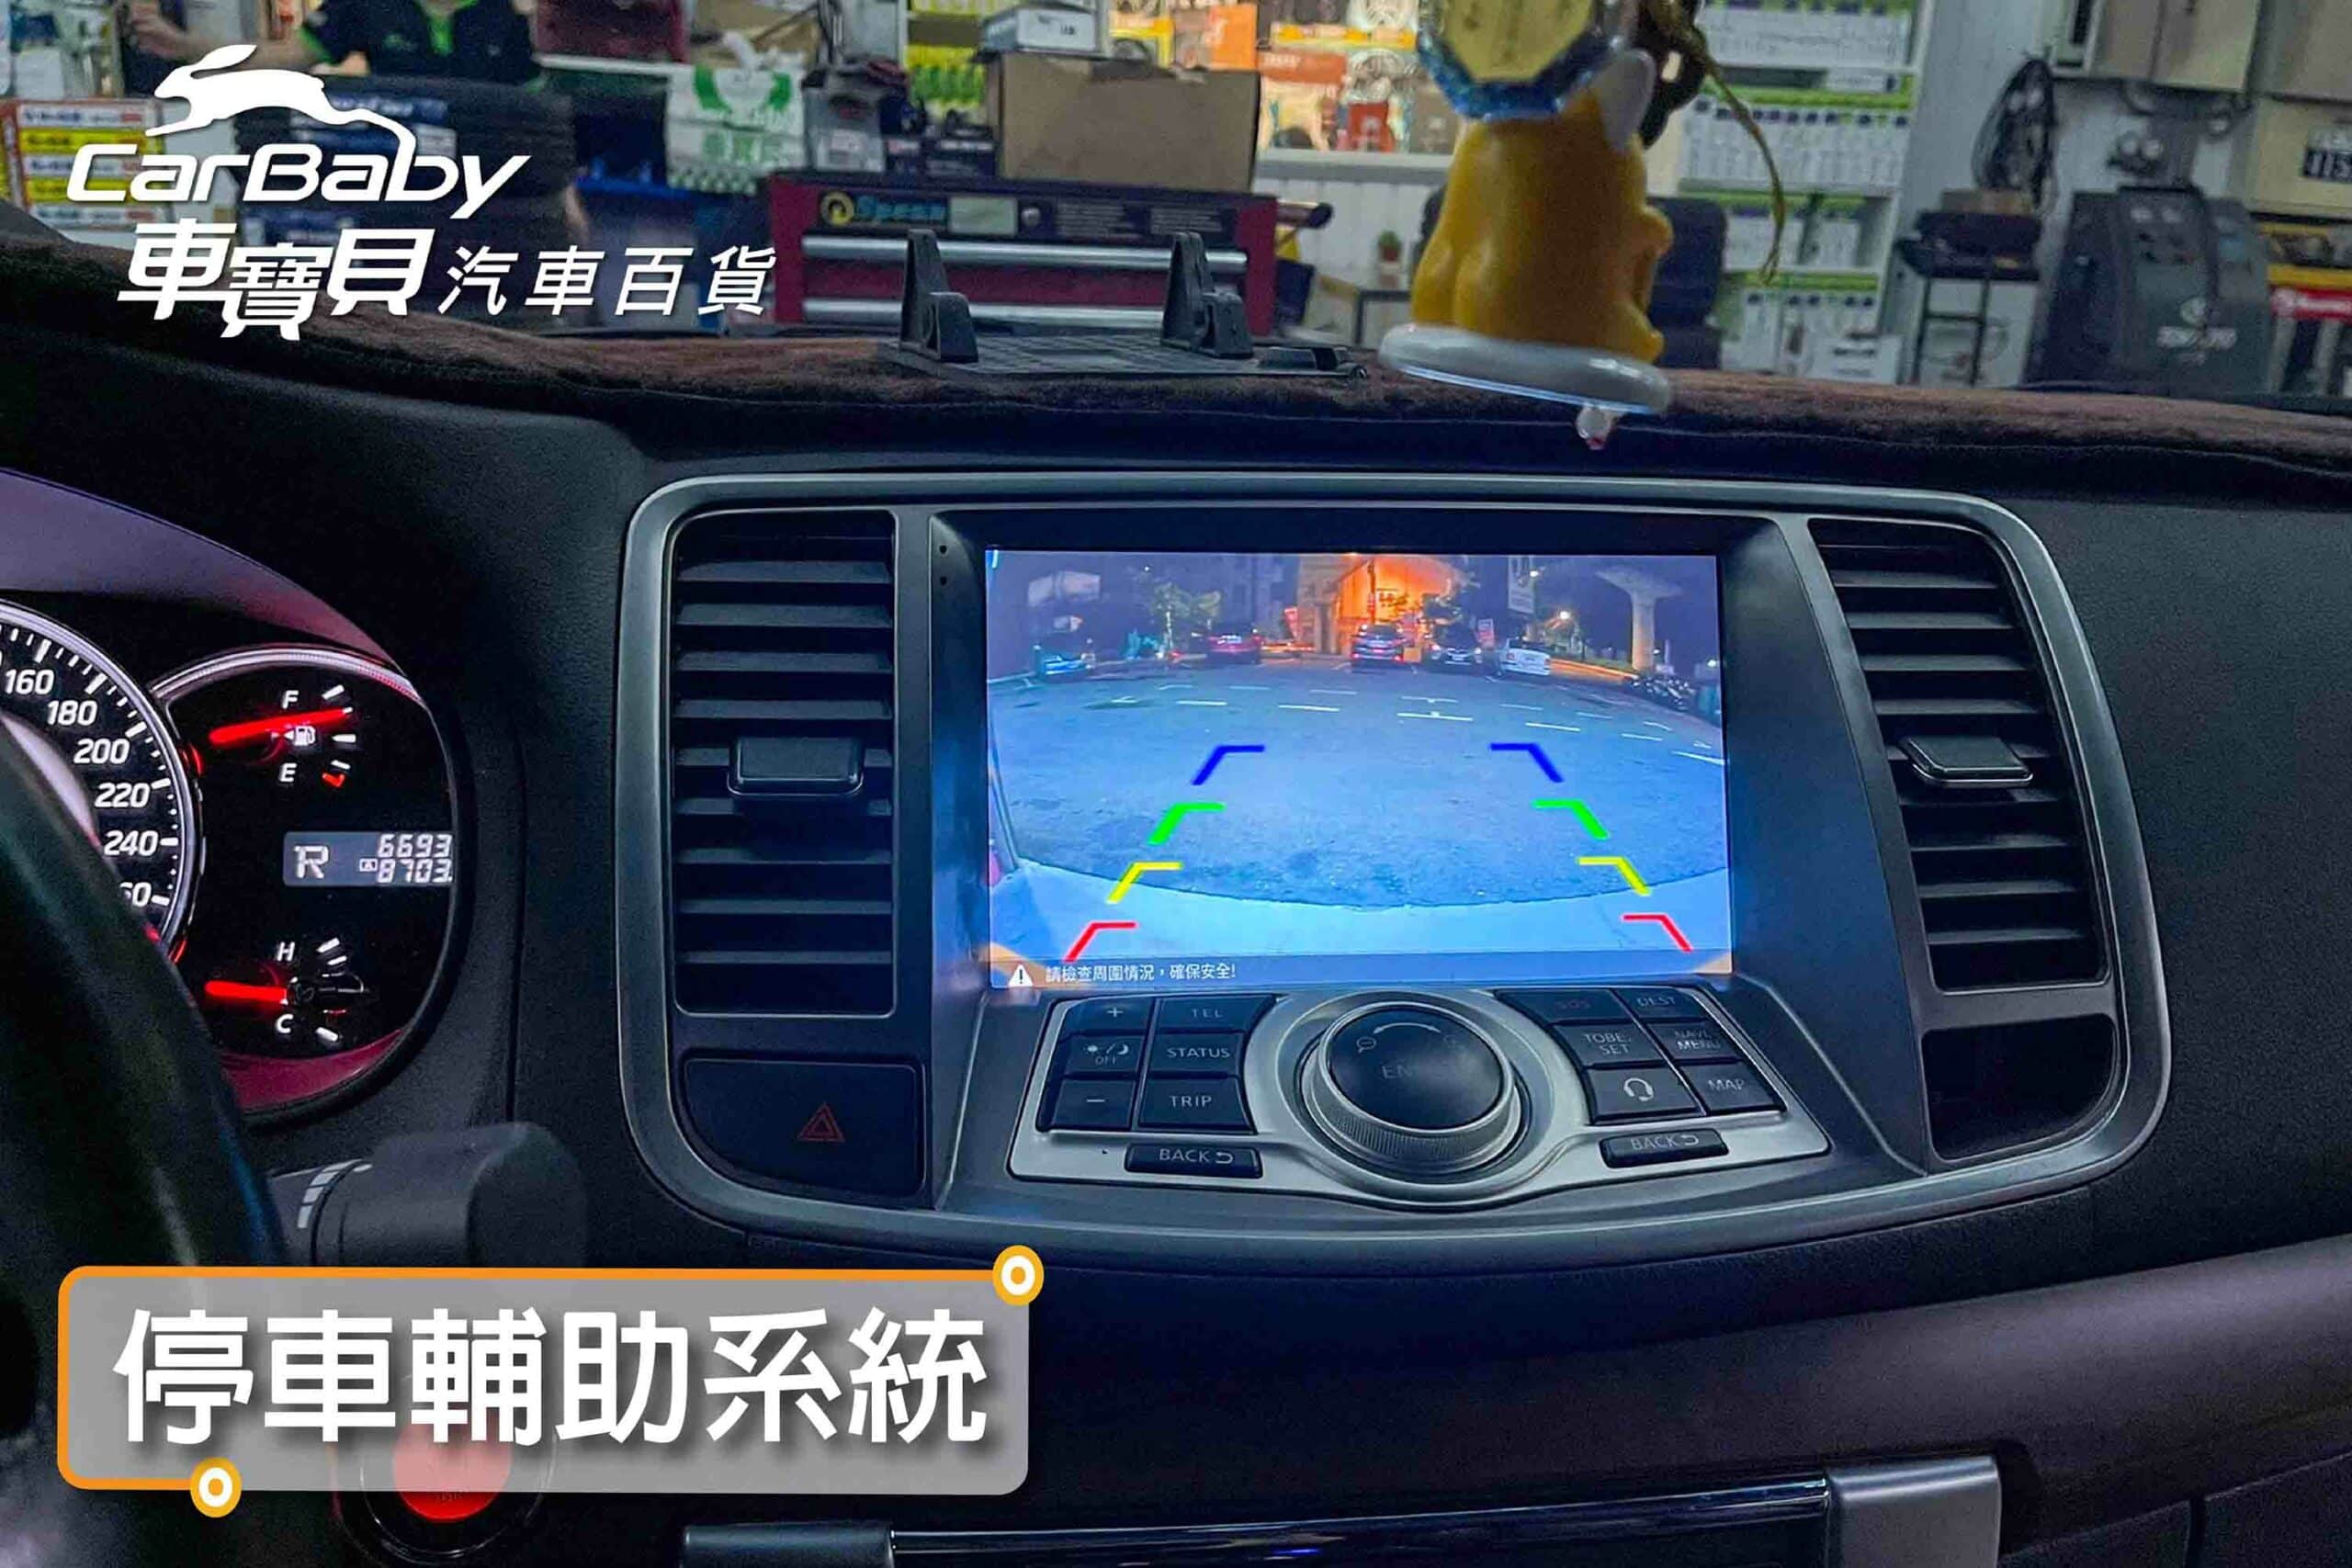 Nissan 日產 Teana 2013年 升級JHY KS99H 頂規安卓主機，安裝於車寶貝汽車百貨大北屯店。JHY KS99H 頂規安卓主機功能特色： 👉 最新安卓系統10.0☑️ 👉 支援 WIFI / 手機熱點分享☑️ 👉 最新無線藍芽(5.0) 手機免持☑️ 👉 與內裝100%密合，無損安裝！☑️ 👉 全觸控電容屏液晶螢幕☑️ 👉 產品保固，台灣電檢合格 ☑️ 👉 內建雙聲控功能☑️ 👉 G+G雙層鋼化玻璃，支援APP左右分屏顯示☑️ 👉 正版導航王TM 3D導航圖資系統+手機助手☑️ 👉 獨家ZLINK-適用蘋果/安卓手機使用 ☑️ 👉 學習型方控，可對應市售車用方向盤功能鍵 ☑️ 👉 支援前後雙錄影配件(選配)☑️ 👉 可相容市售環景系統☑️ 👉 支援倒車顯影☑️ 👉 支援倒車格式 (CVBS/AHD/TVI)☑️  👉 支援車機雲端線上更新 ☑️ 👉 支援外掛雙控環景系統(360-DA1) ☑️